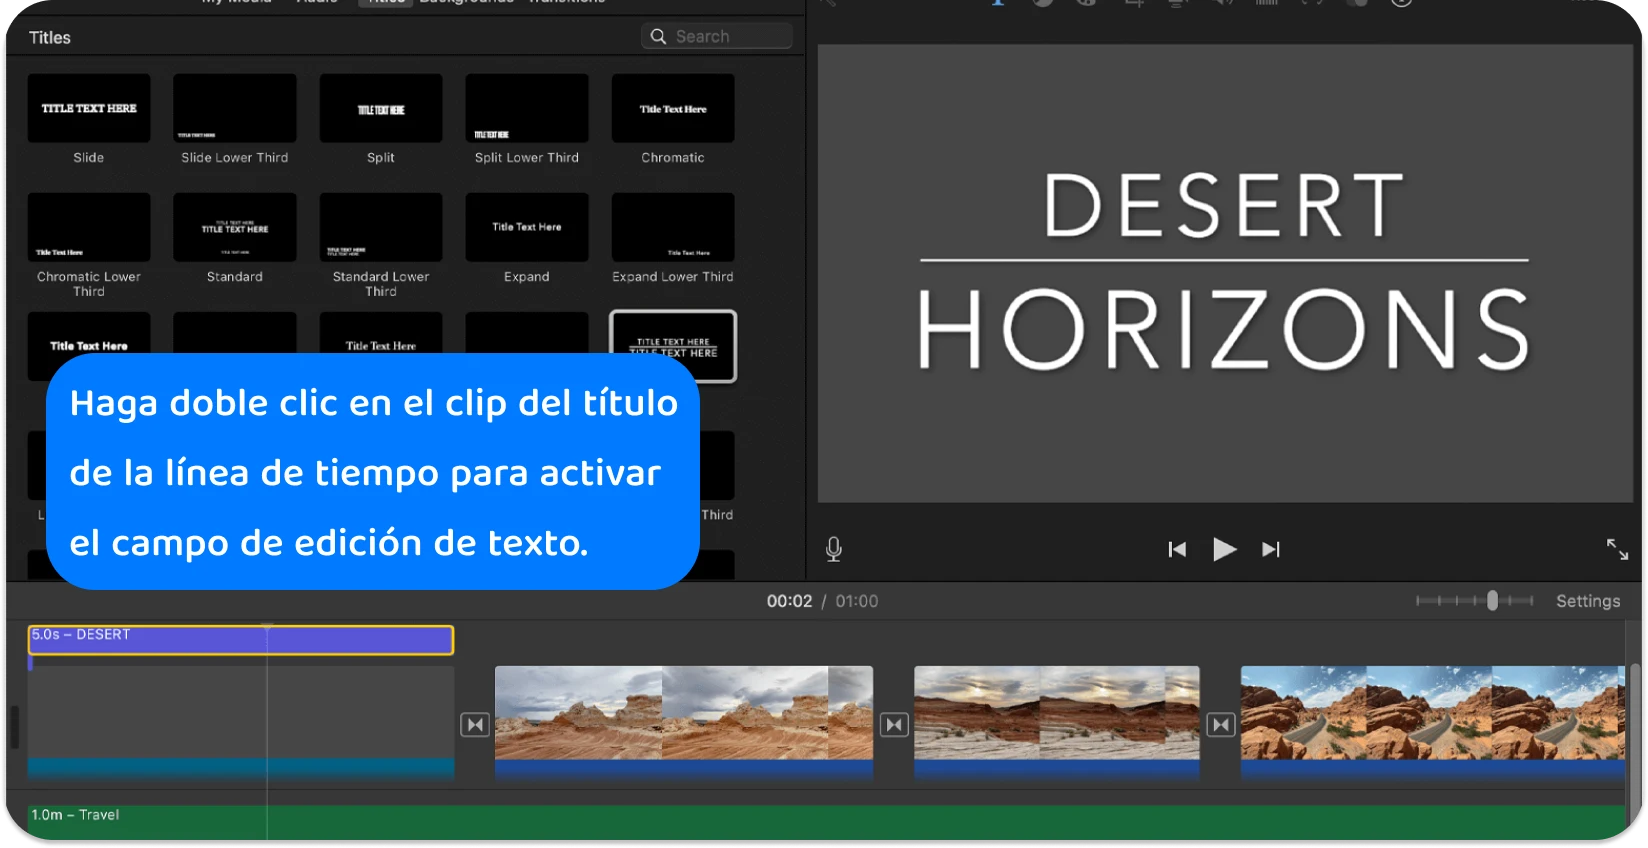 La interfaz de títulos de iMovie muestra una variedad de estilos y formatos de texto para agregar títulos profesionales a proyectos de video.
